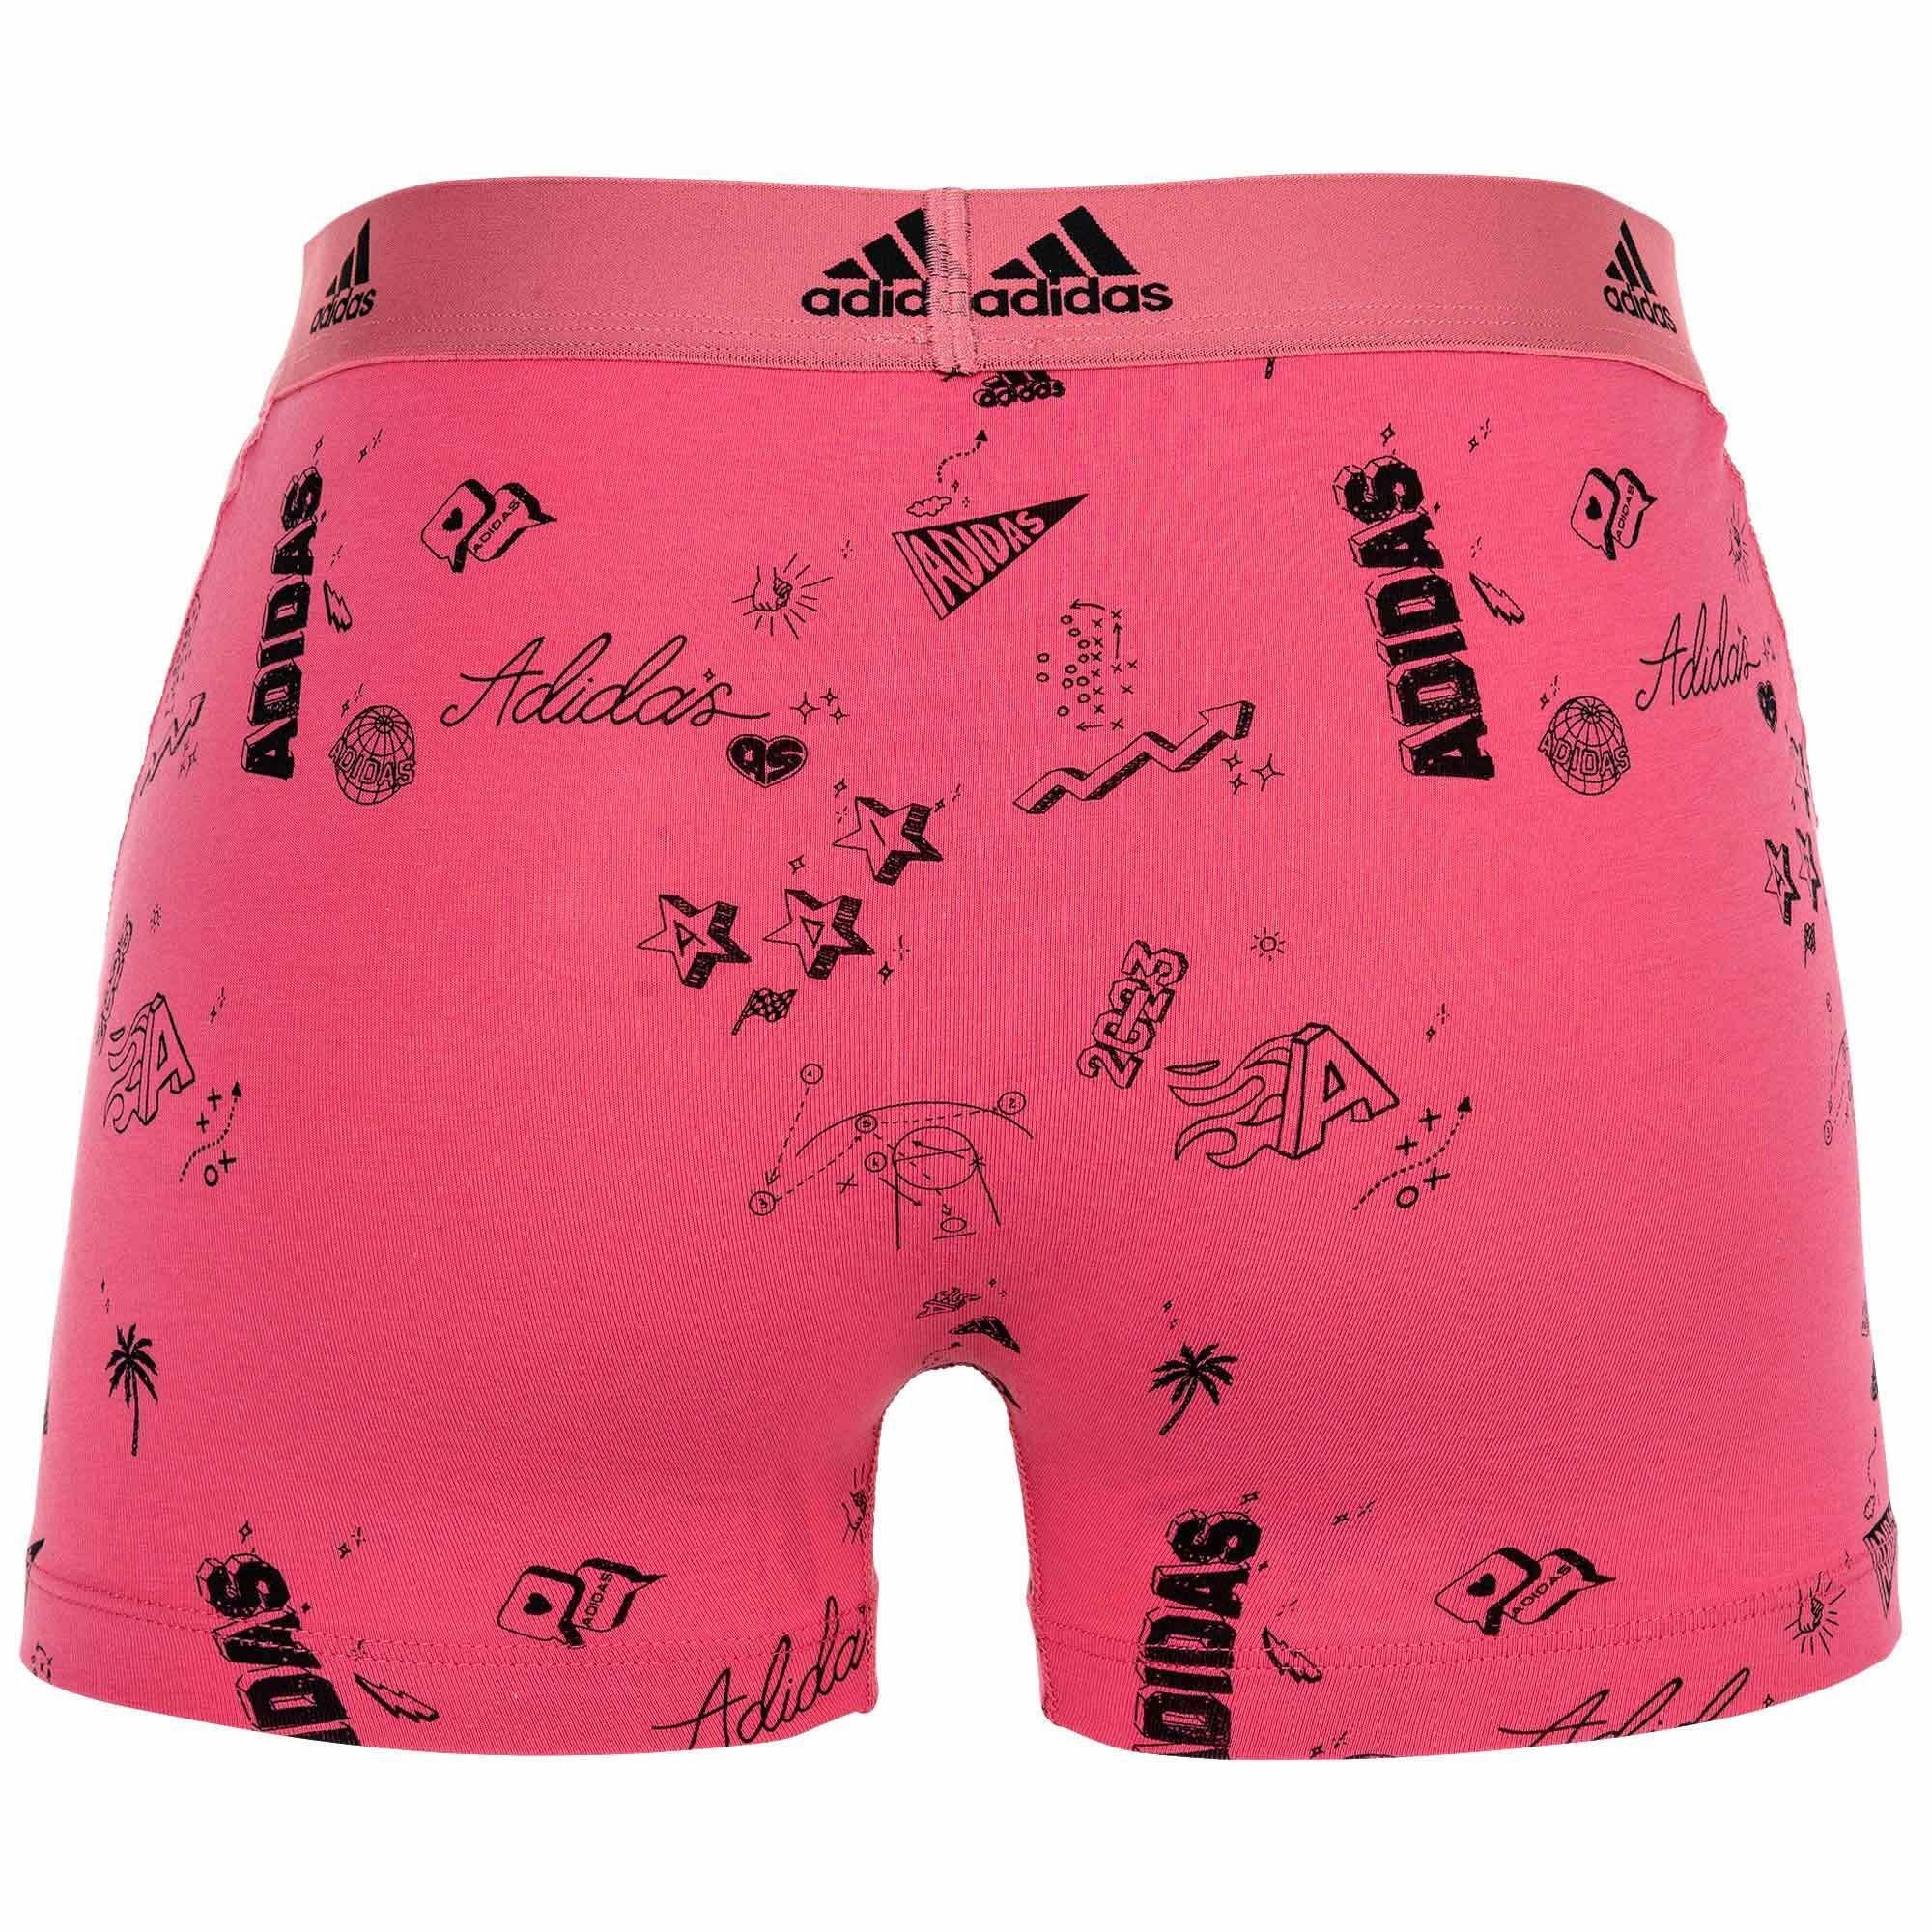 Boxer Sportswear adidas Trunks, - Schwarz/Pink Boxershorts, Active Flex Pack Herren 3er